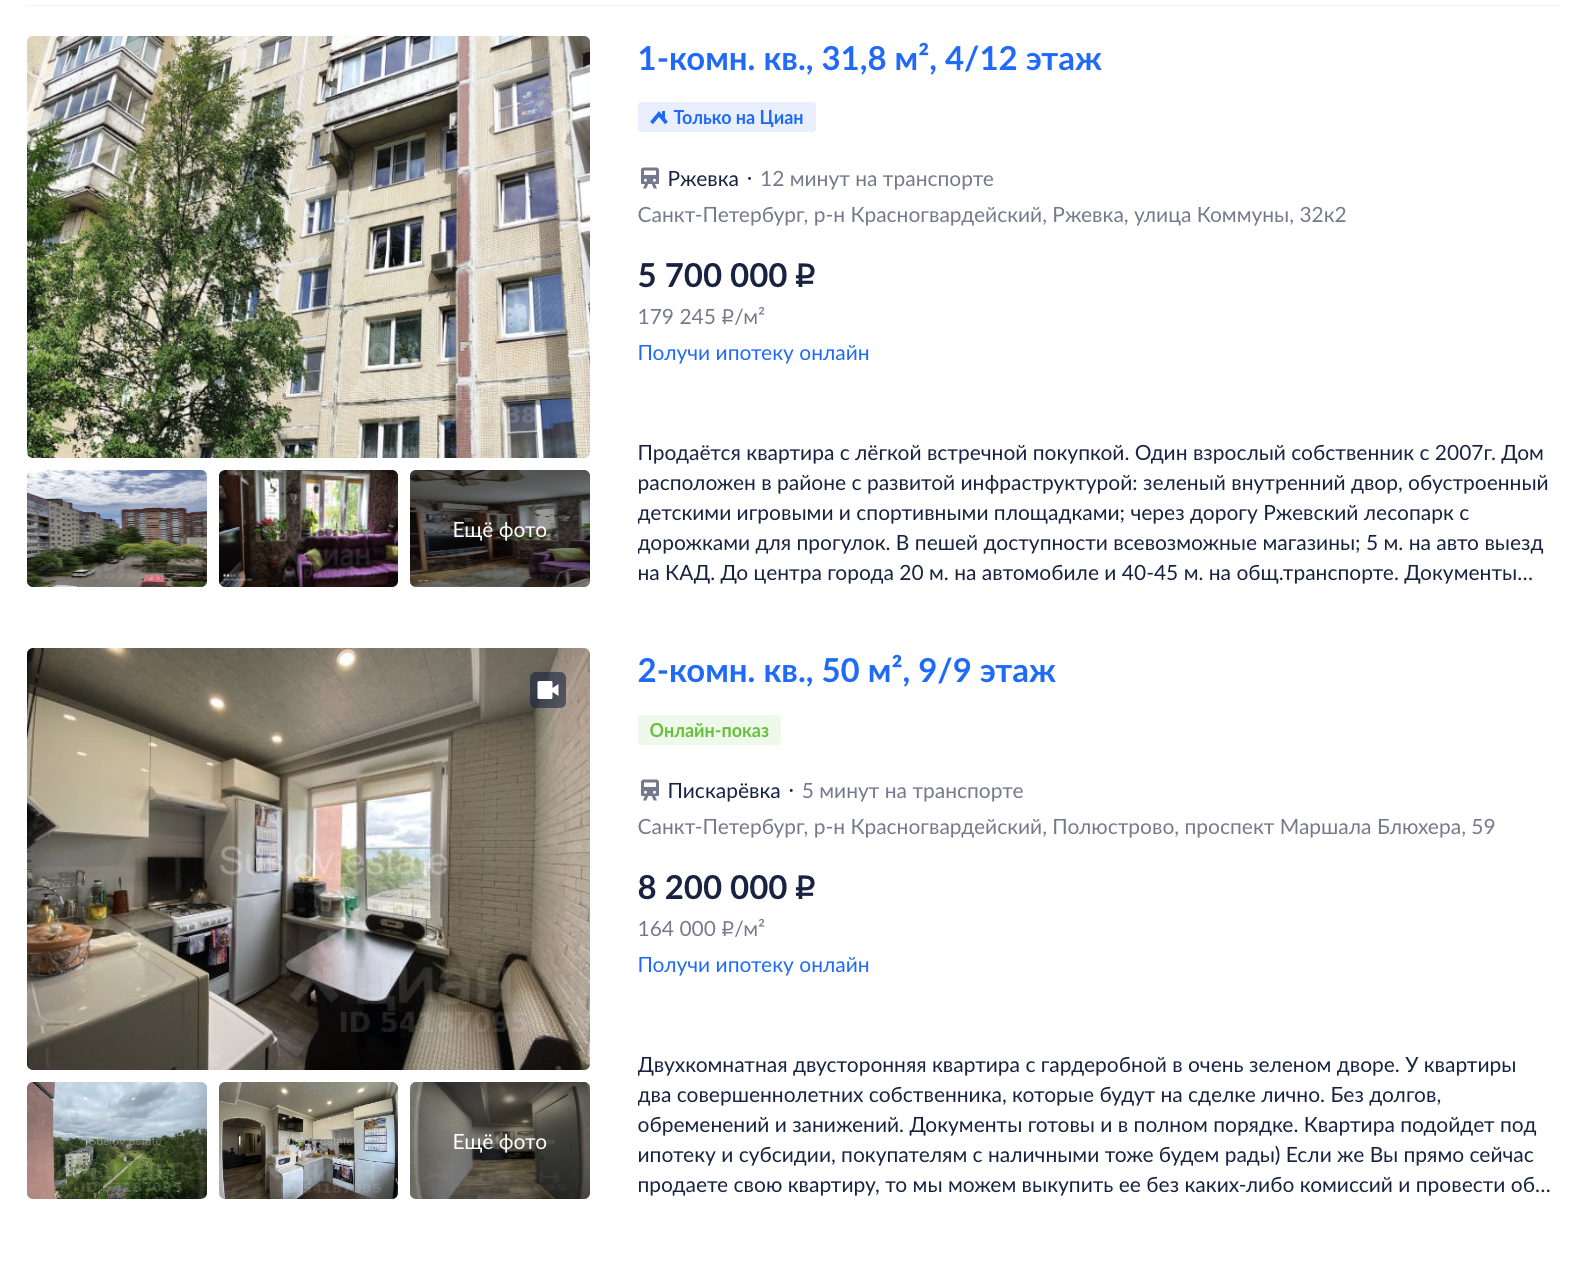 Цена квартир на вторичном рынке. Источник: cian.ru